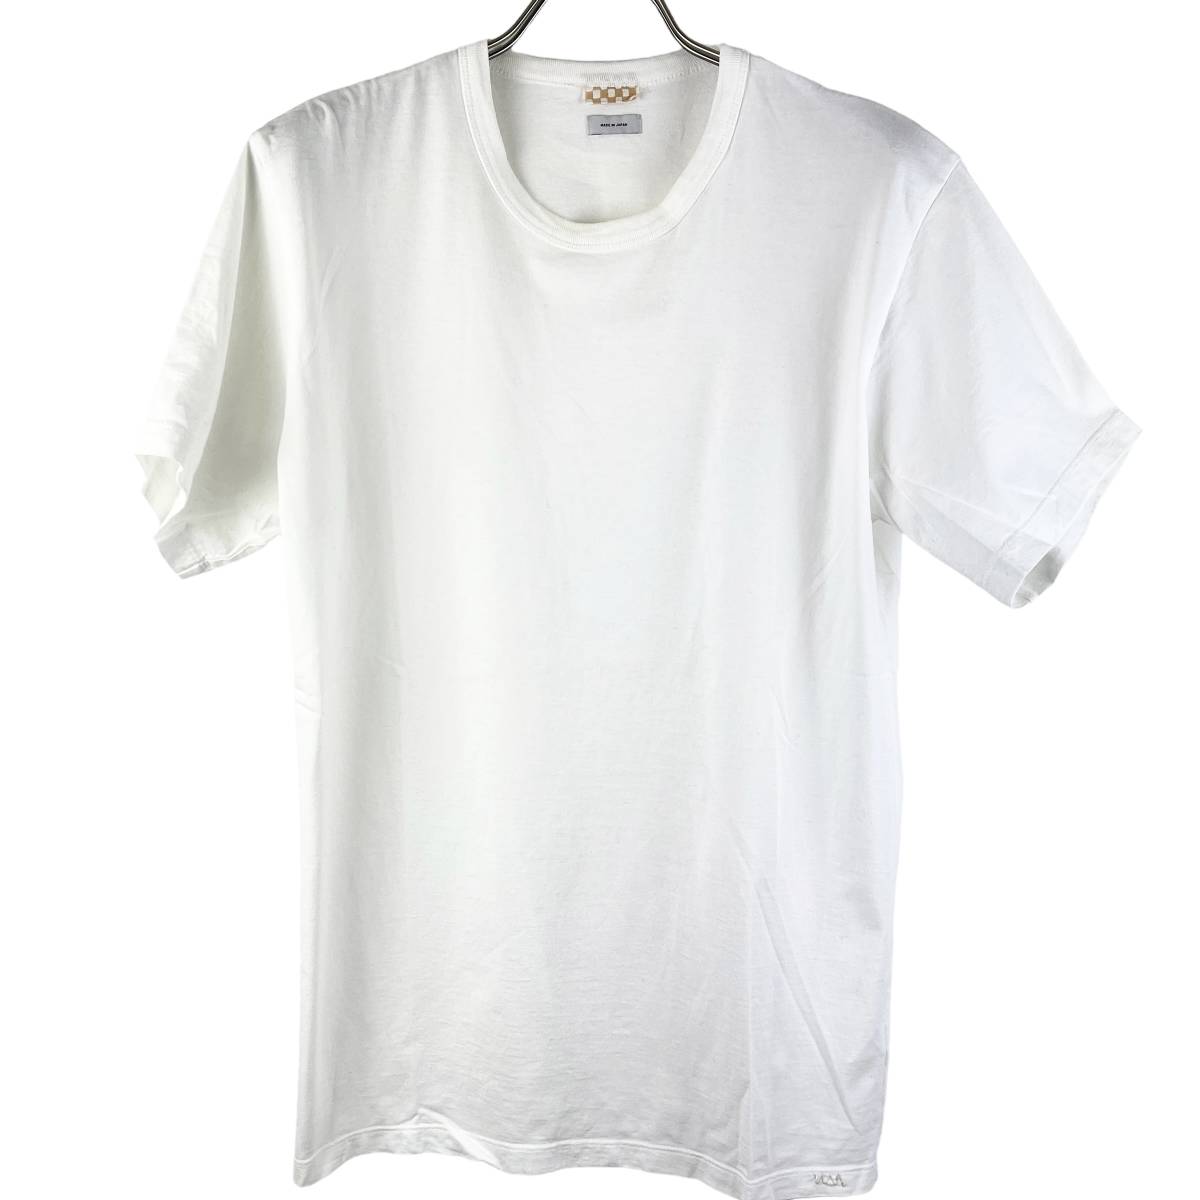 激安/新作 Vintage JUMBO VISVIM(ビズビム) S/S 2 (white) Shirt T トップス